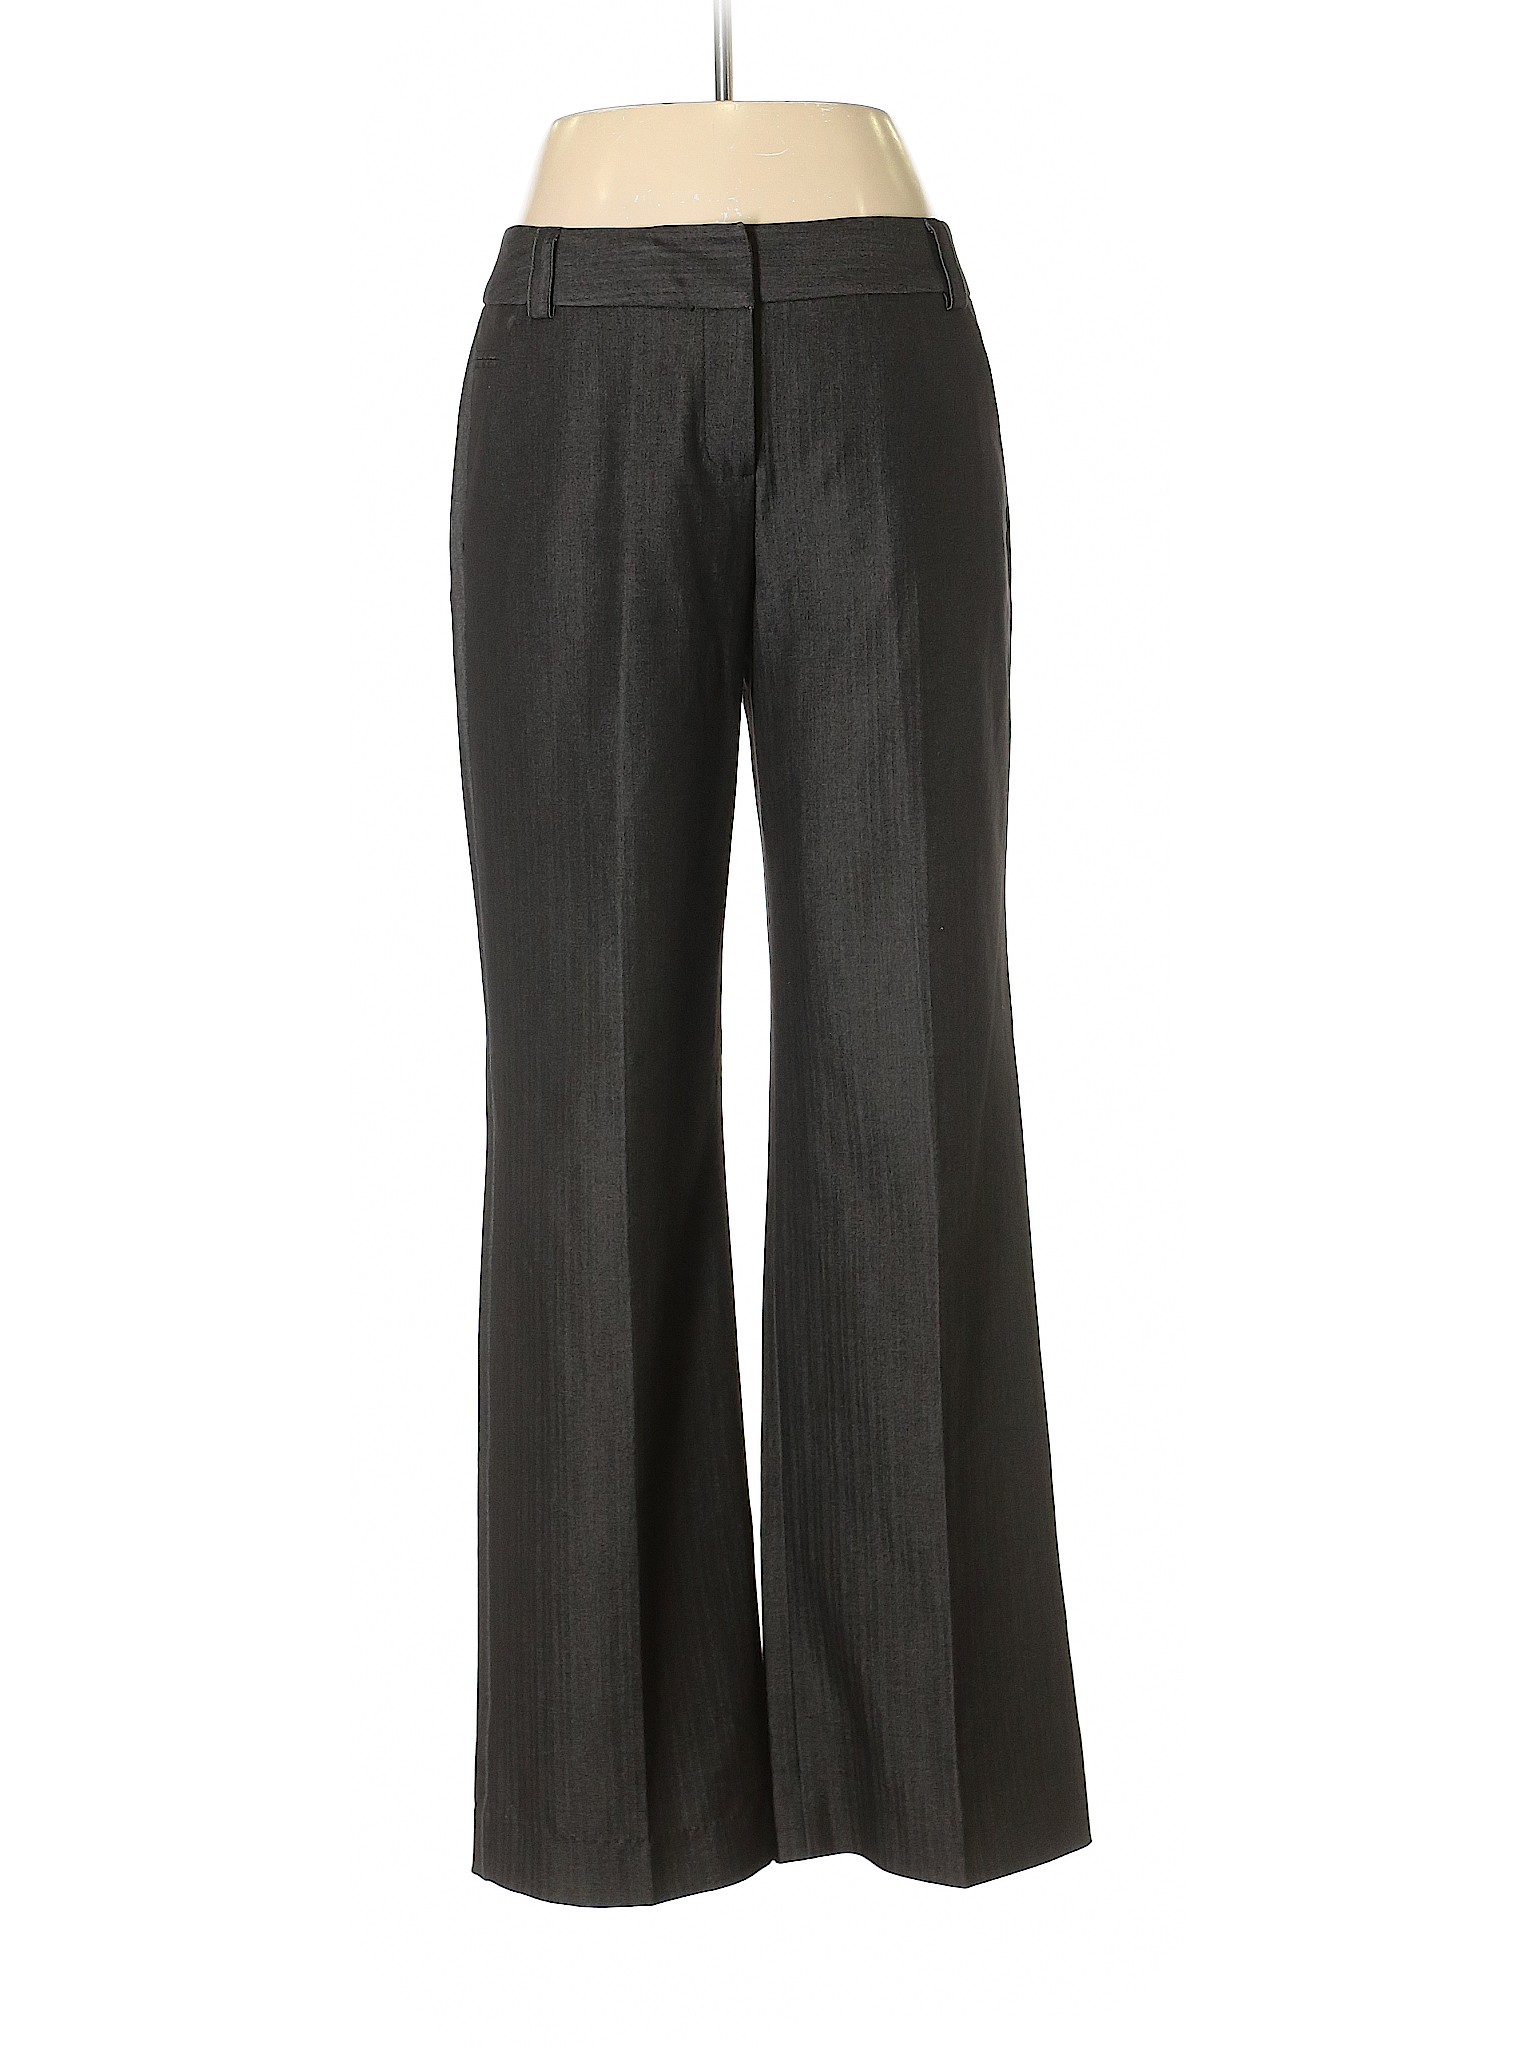 Larry Levine Solid Black Dress Pants Size 10 - 94% off | thredUP